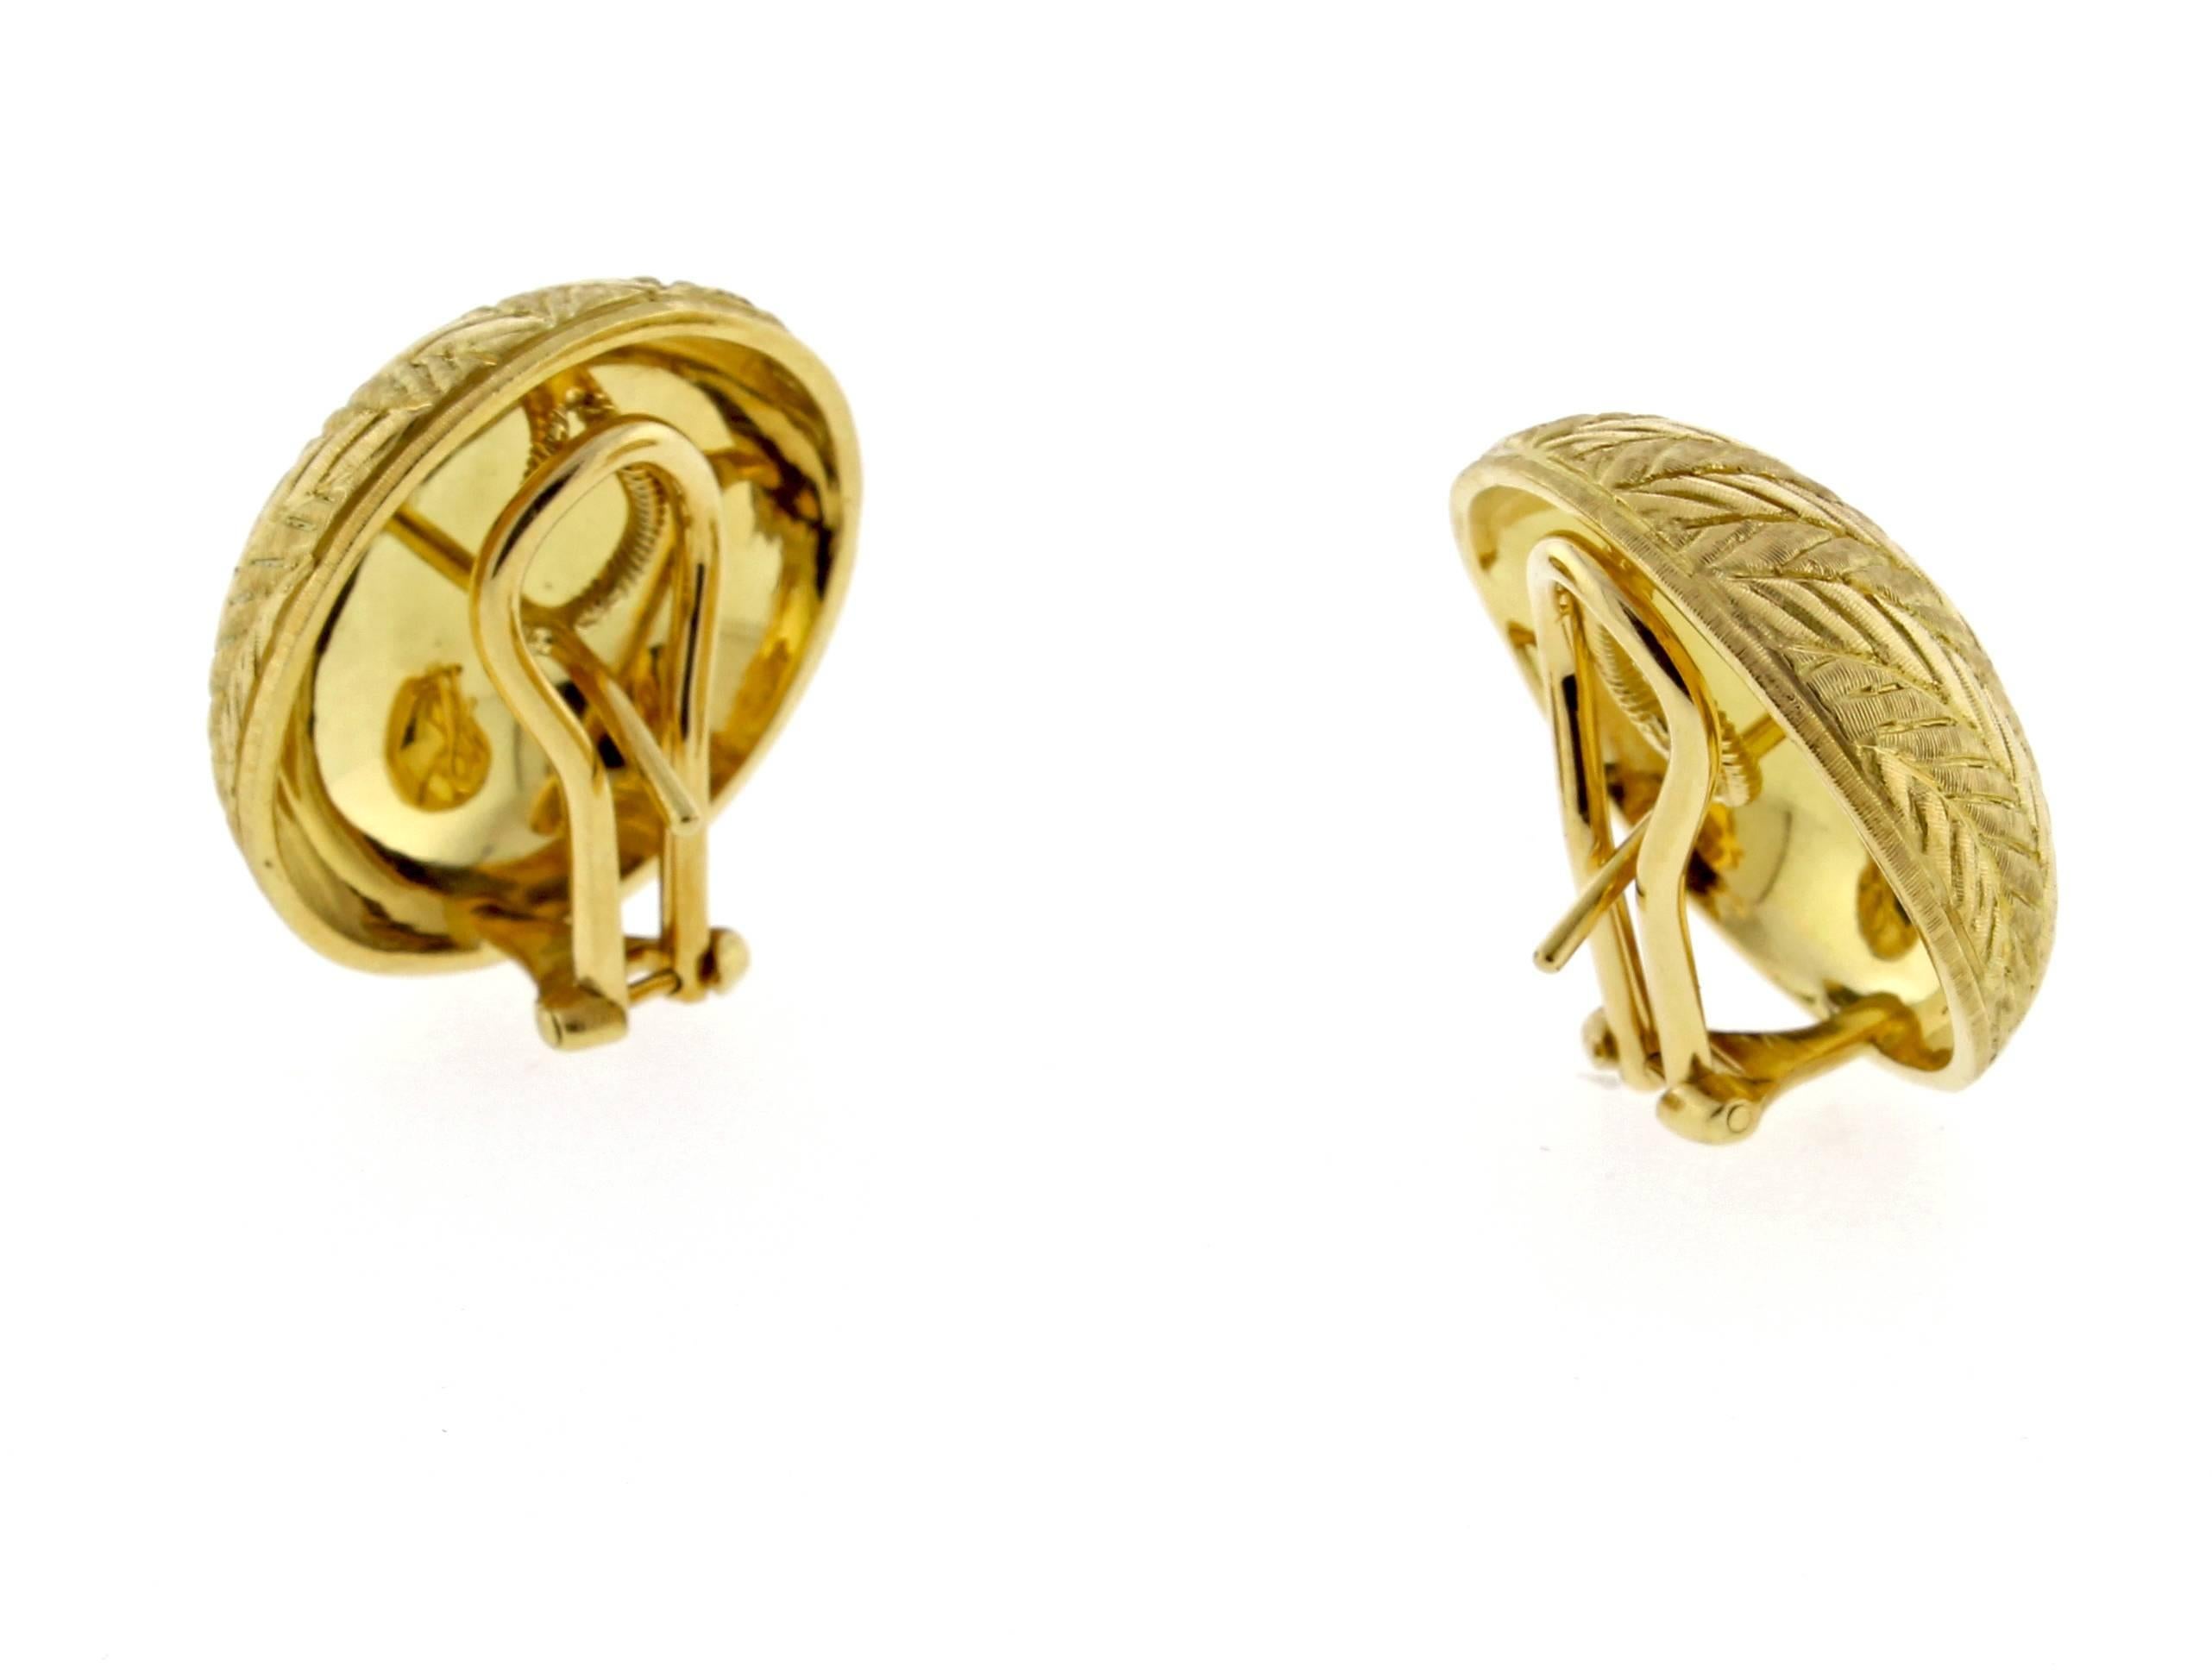 Ein Paar 18 Karat Gelbgold gebürstet fertig Knopf Ohrringe mit unverwechselbaren Hand graviert Fischgrätenmuster. Diese Ohrringe wurden von dem italienischen Juwelier Buccellati mit größter Sorgfalt gefertigt und sind in einem neuwertigen Zustand. 